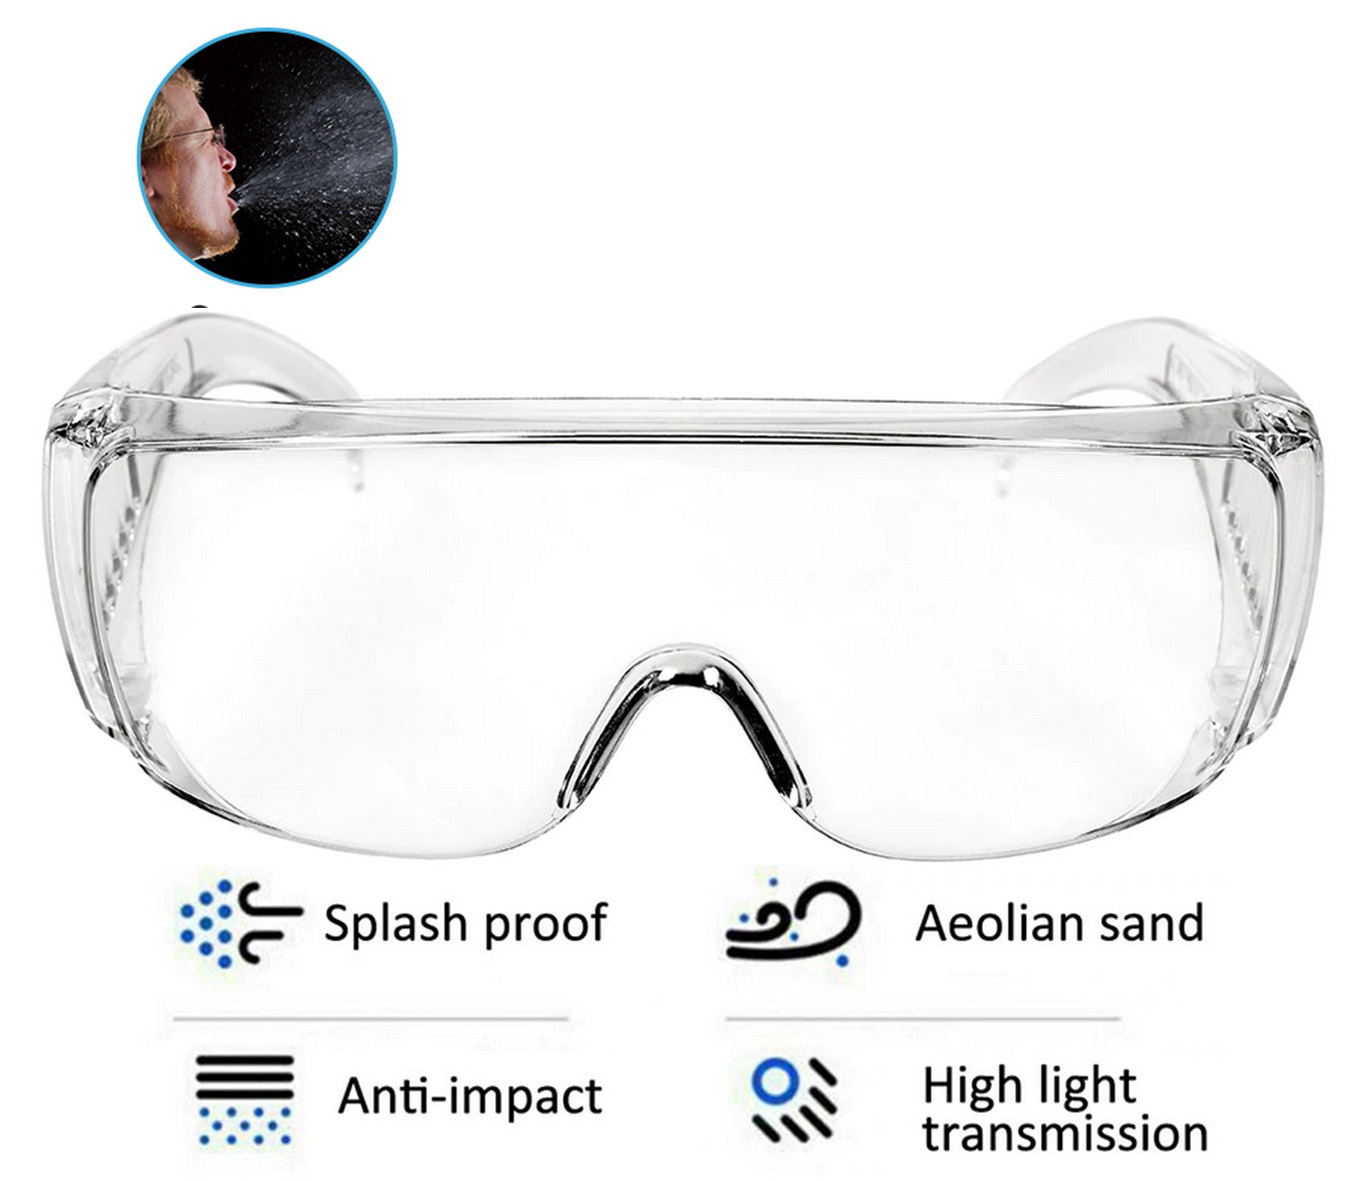 Transparentní brýle anti-zmlžování